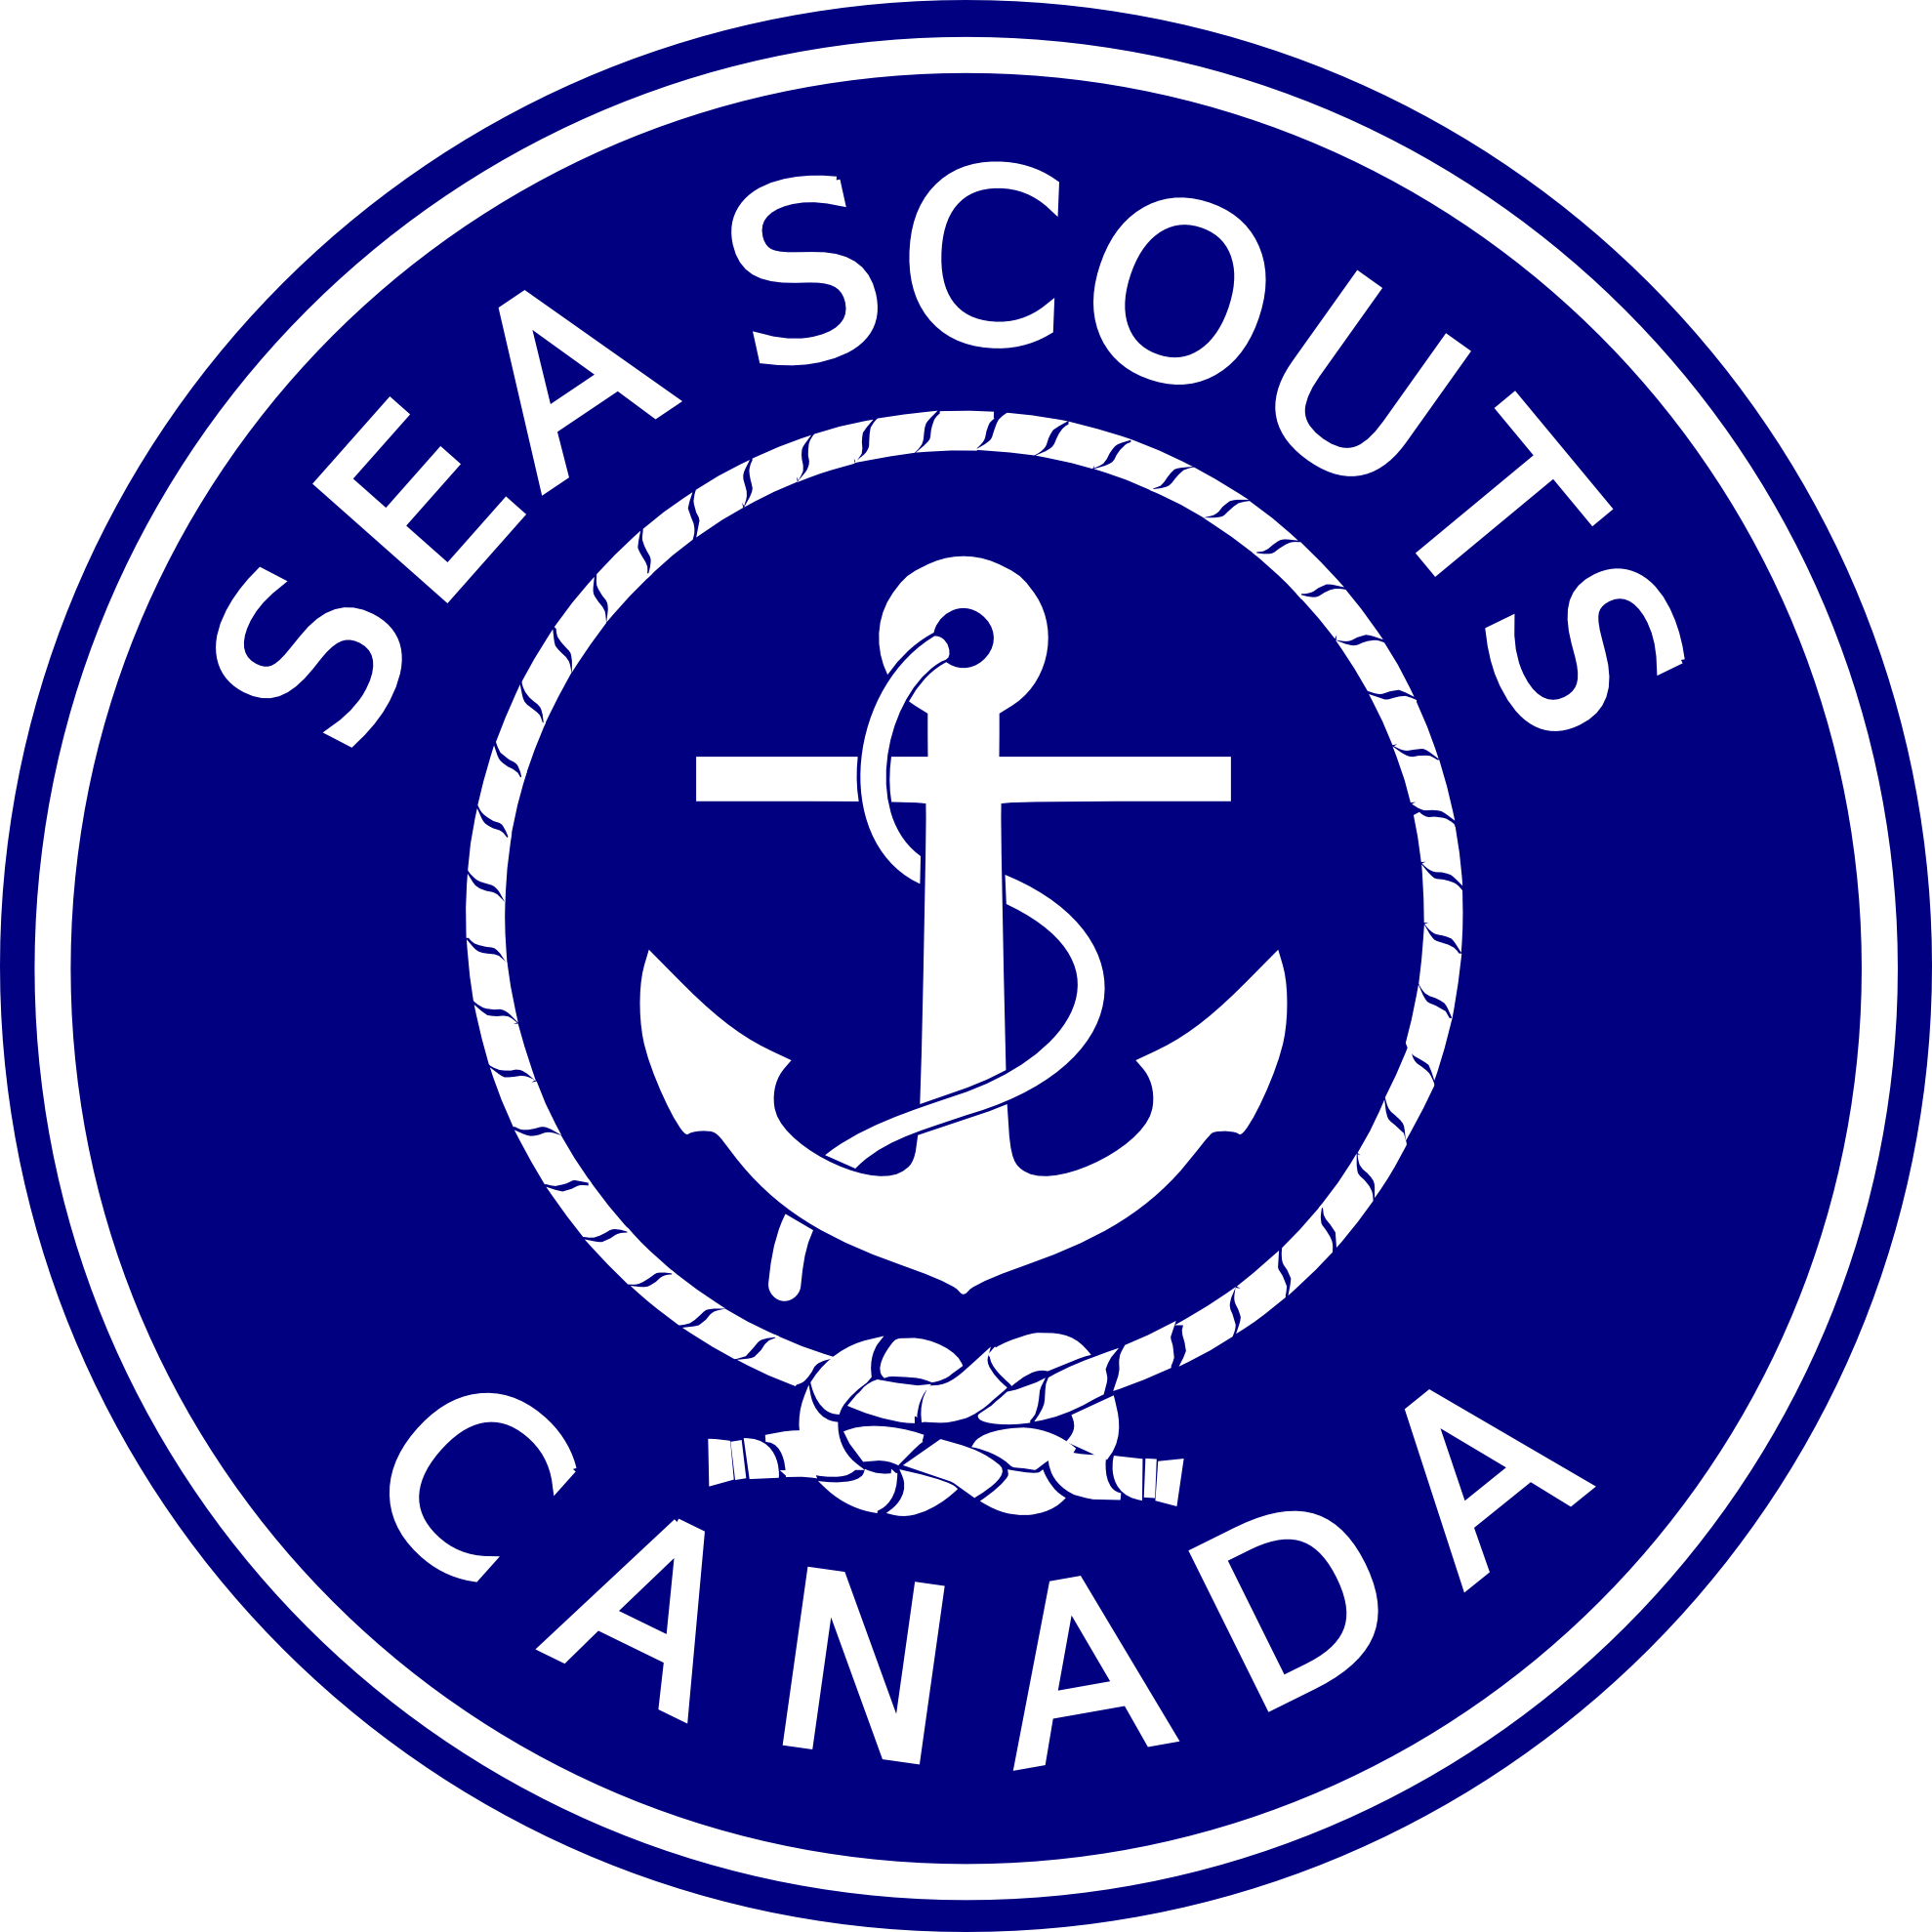 Sea Scout Clipart - Shop Small Saturday 2017 (1979x1979)